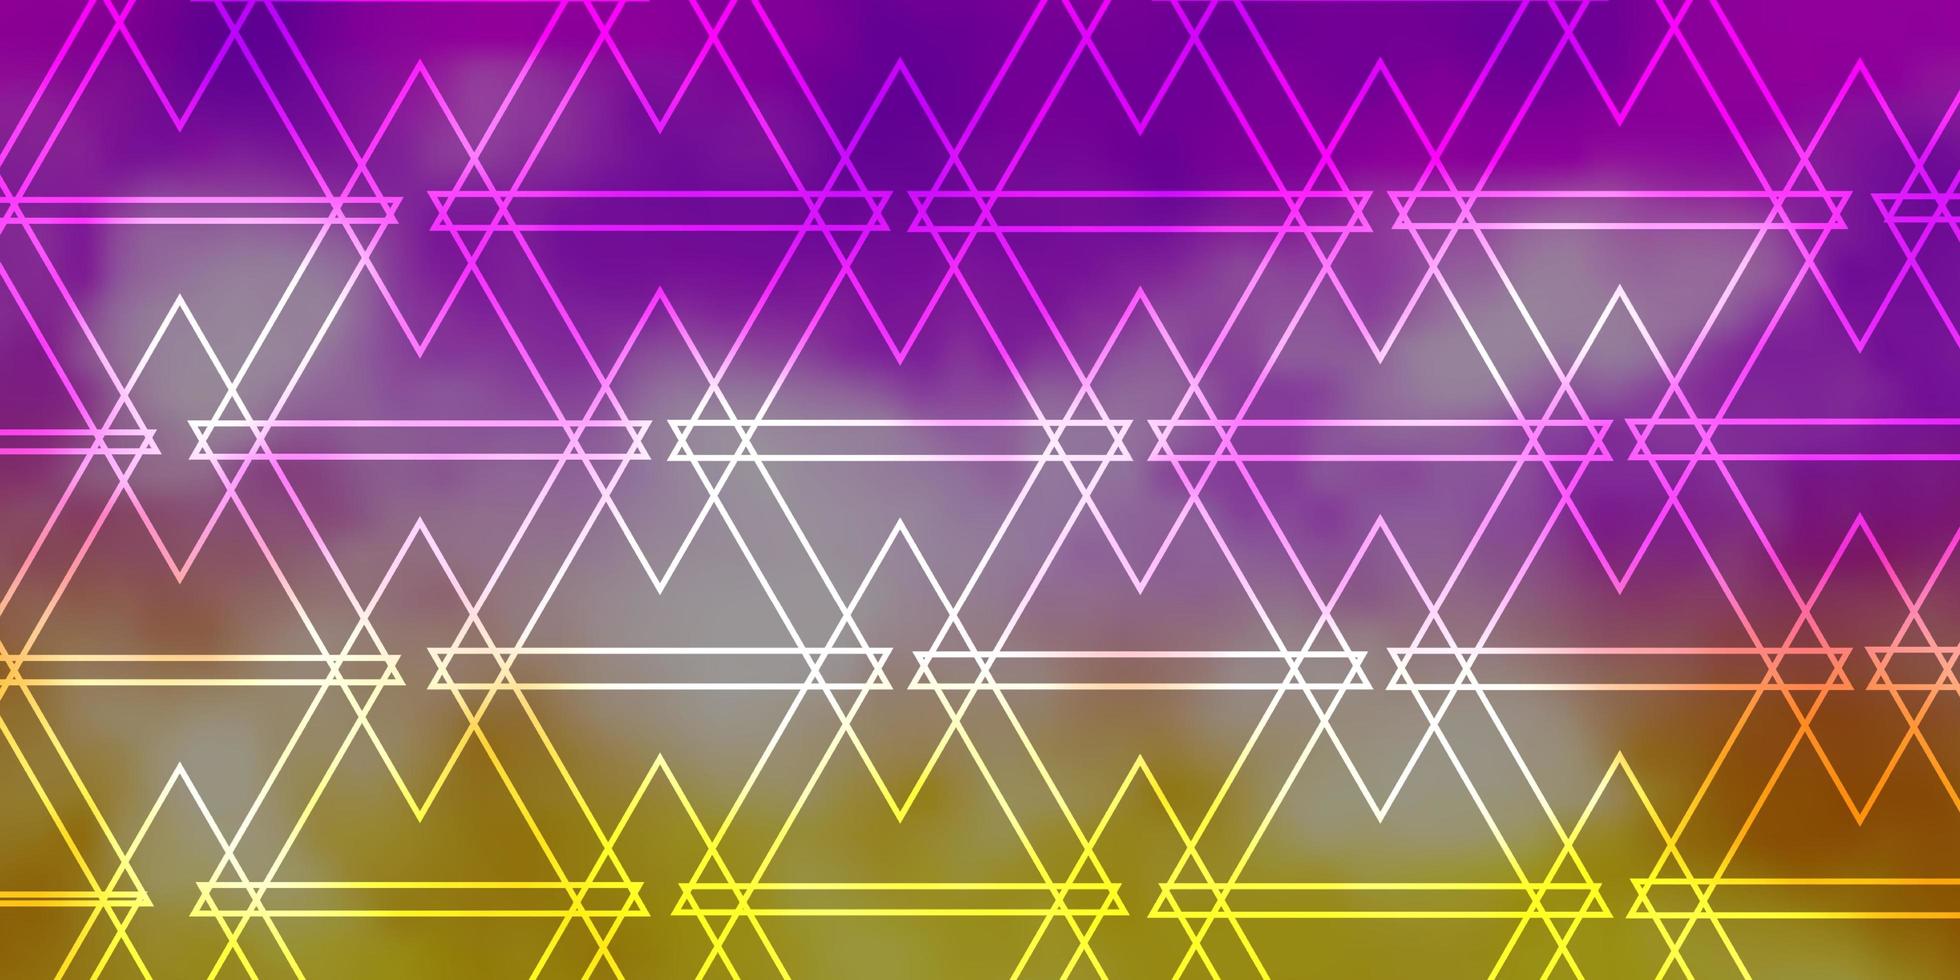 fond de vecteur jaune rose clair avec des lignes triangles design intelligent dans un style abstrait avec motif de triangles dégradés pour les brochures dépliants